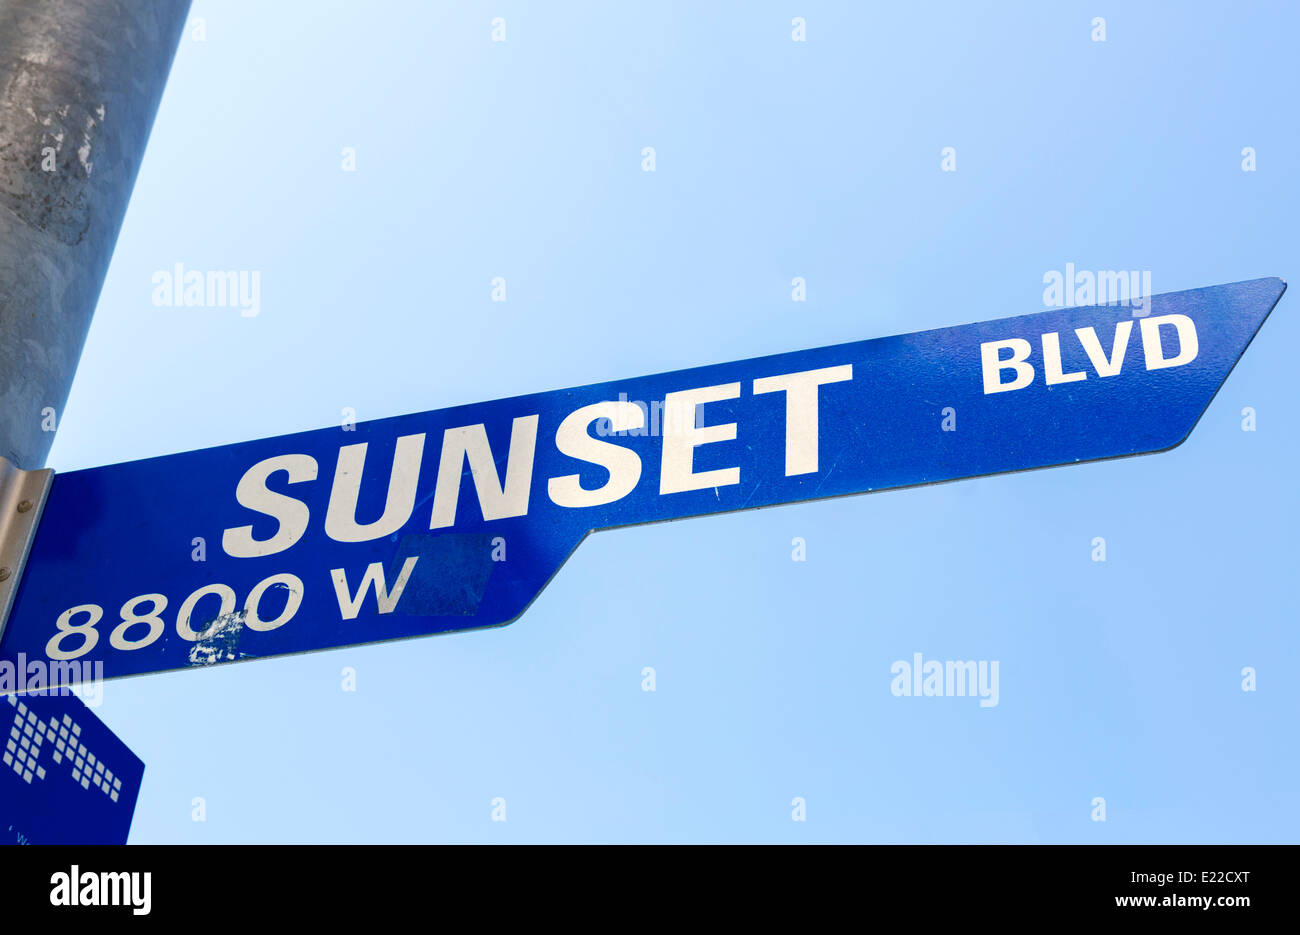 Plaque de rue Sunset Boulevard, West Hollywood, Los Angeles, Californie, USA Banque D'Images